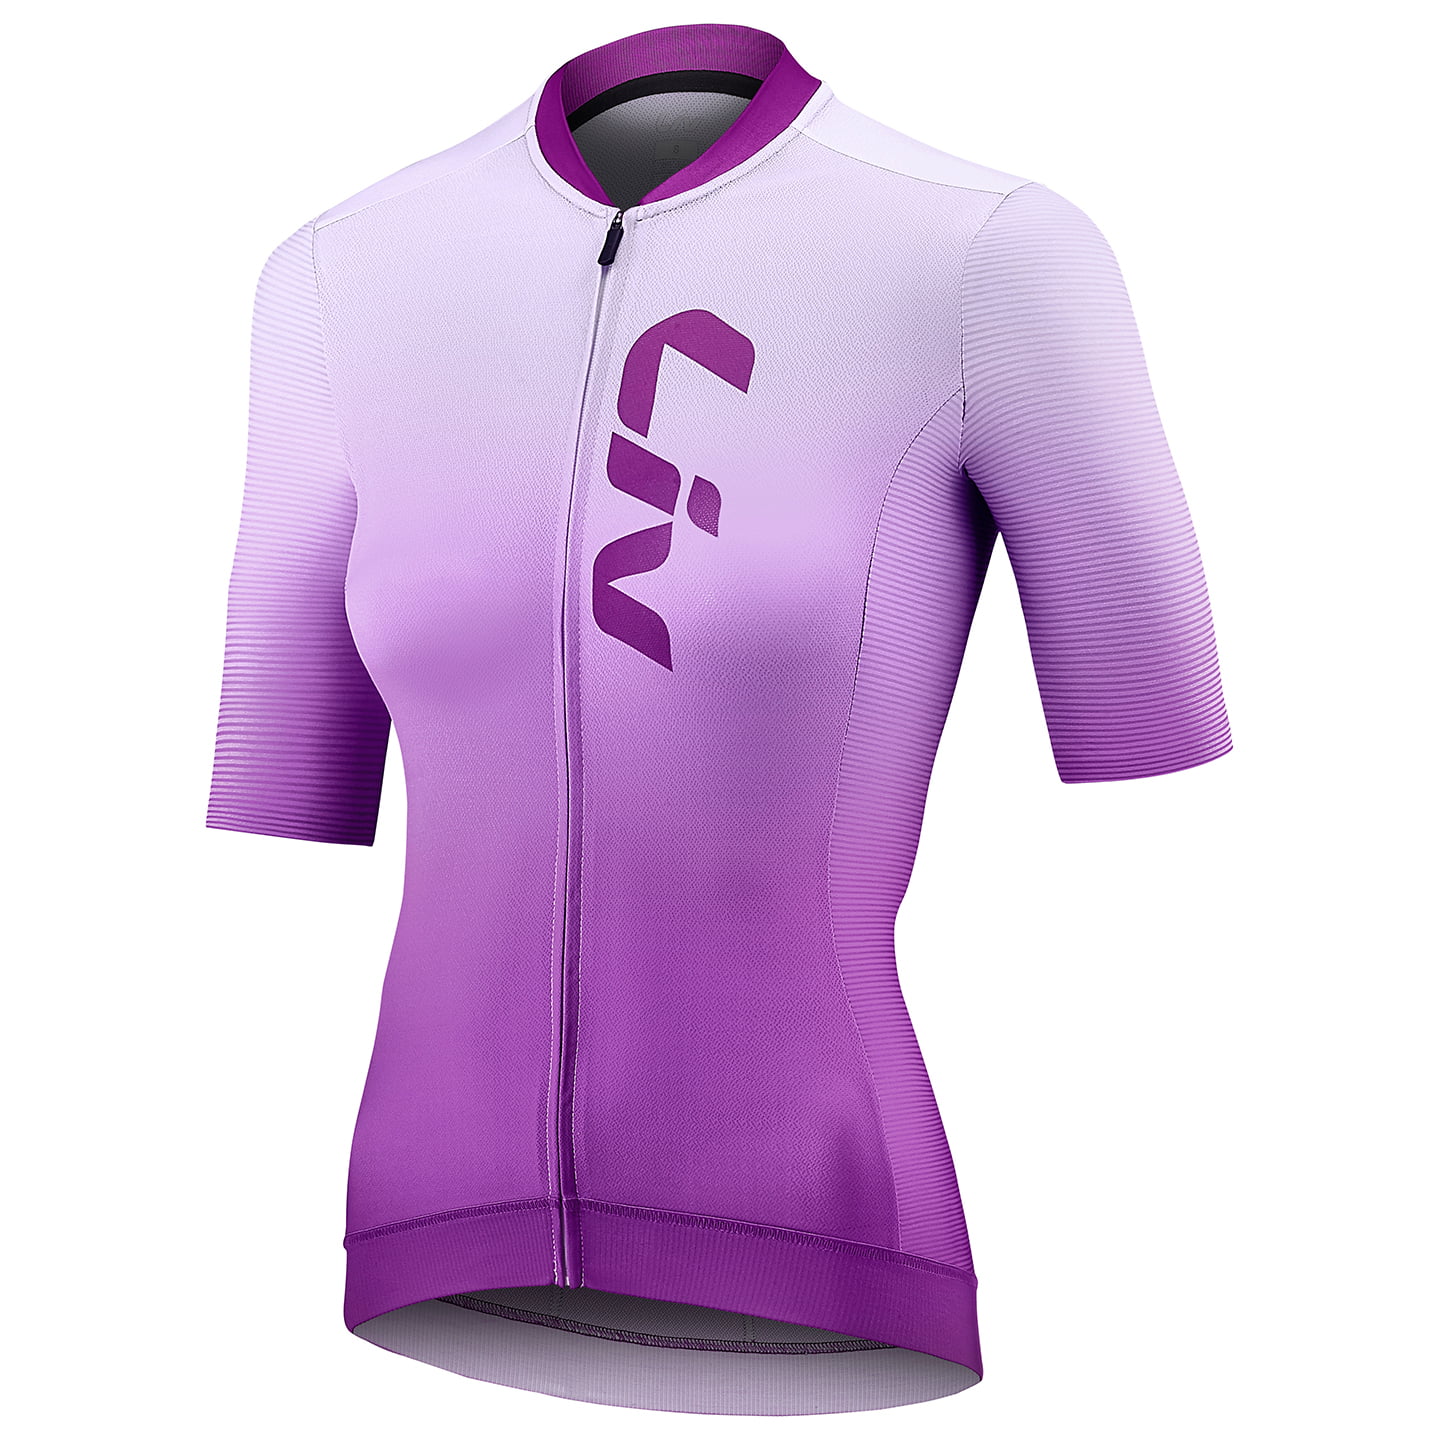 LIV Race Day Women’s Short Sleeve Jersey Women’s Short Sleeve Jersey, size XL, Cycle jersey, Bike gear